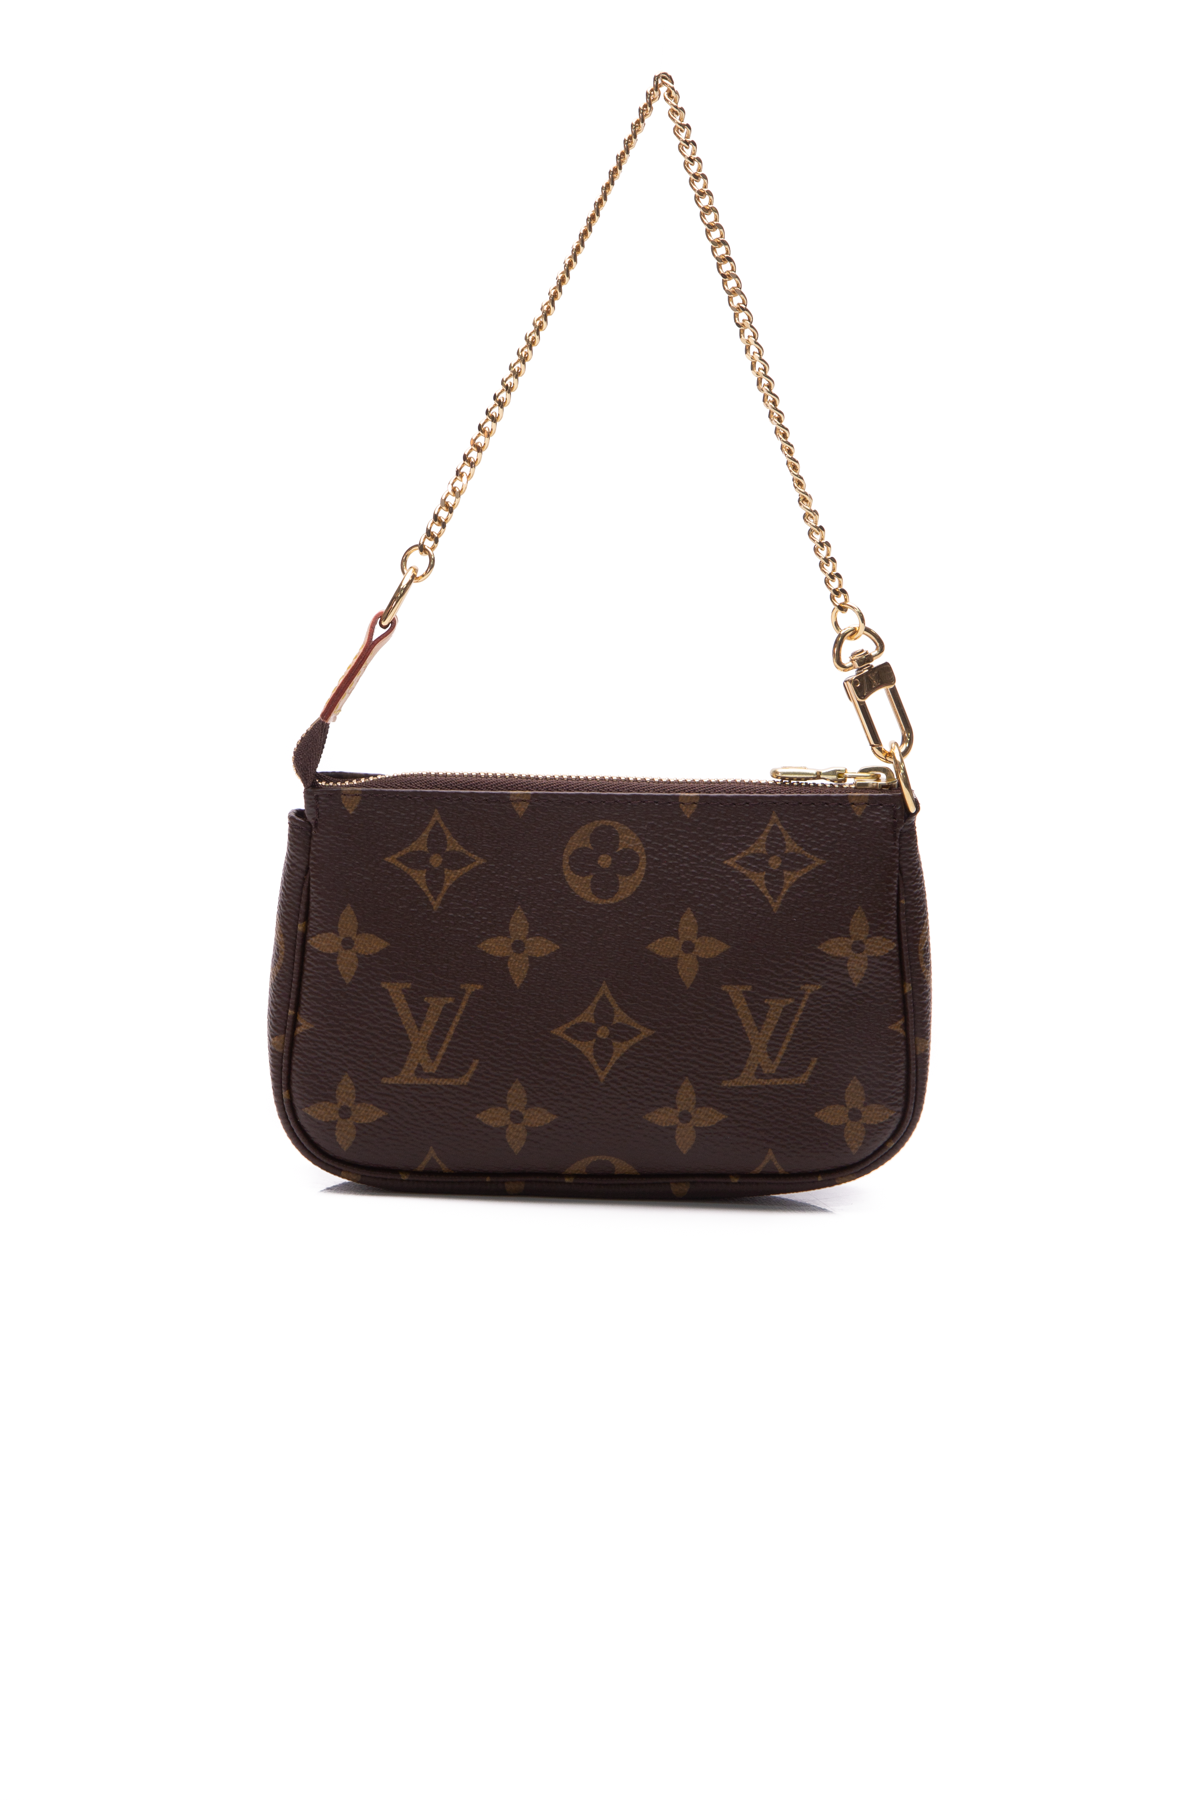 Louis Vuitton Pochette Accessoires: The Chicest Mini Shoulder Bag